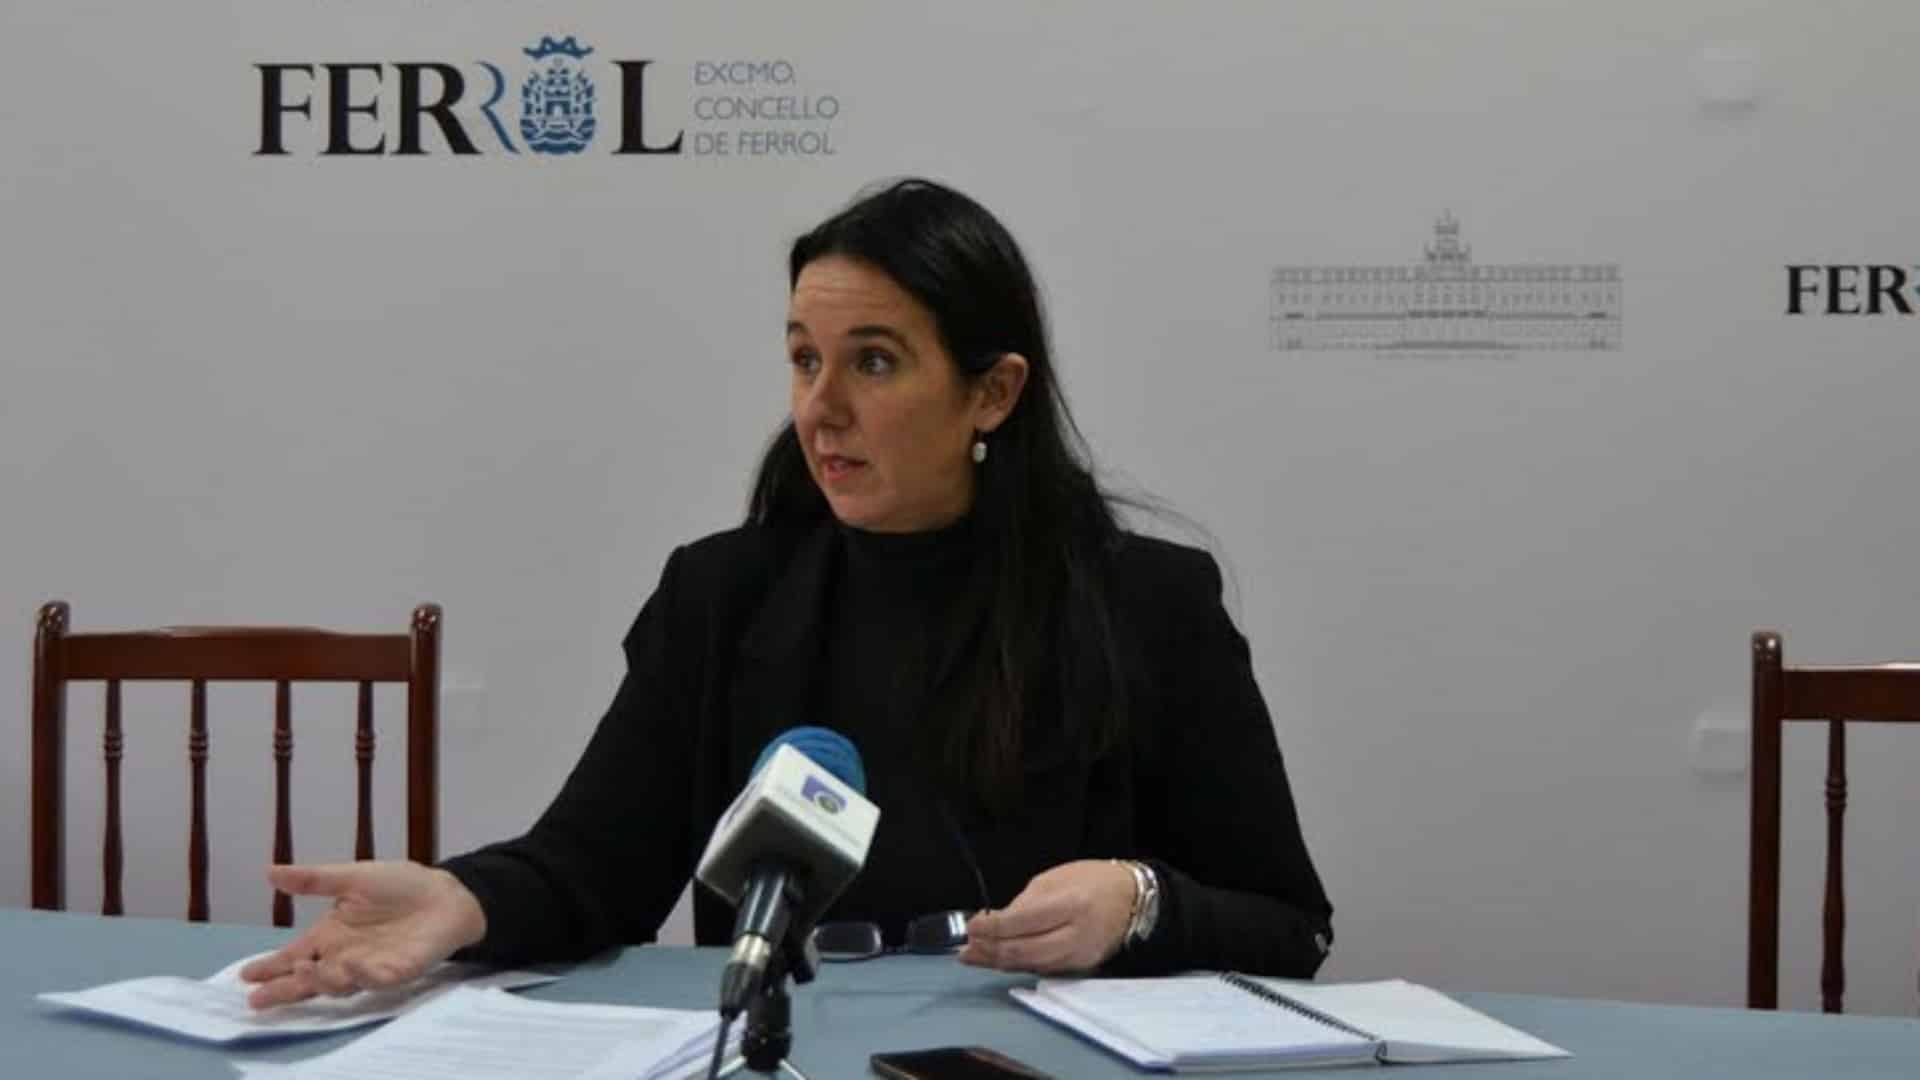 La concelleira de Benestar Social, Eva Martínez Montero | CONCELLO DE FERROL